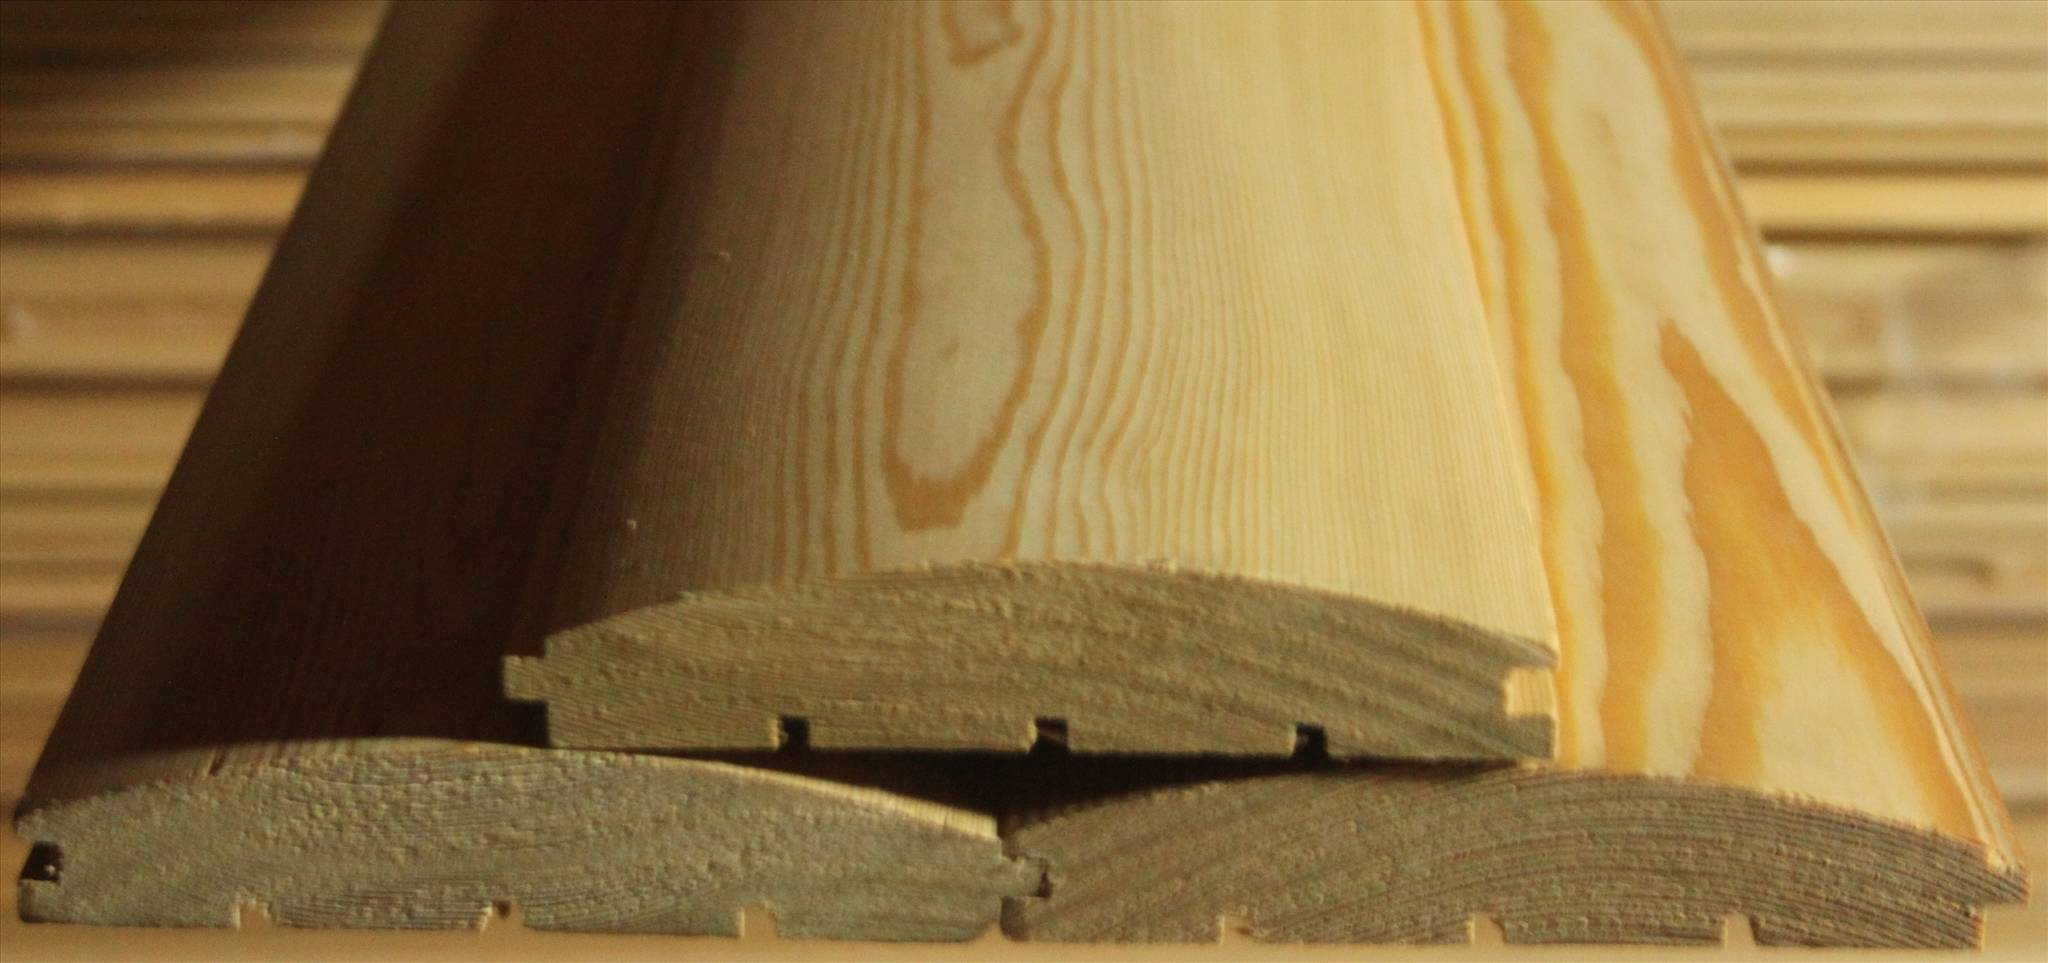 Сравнение свойств хвойных пород древесины